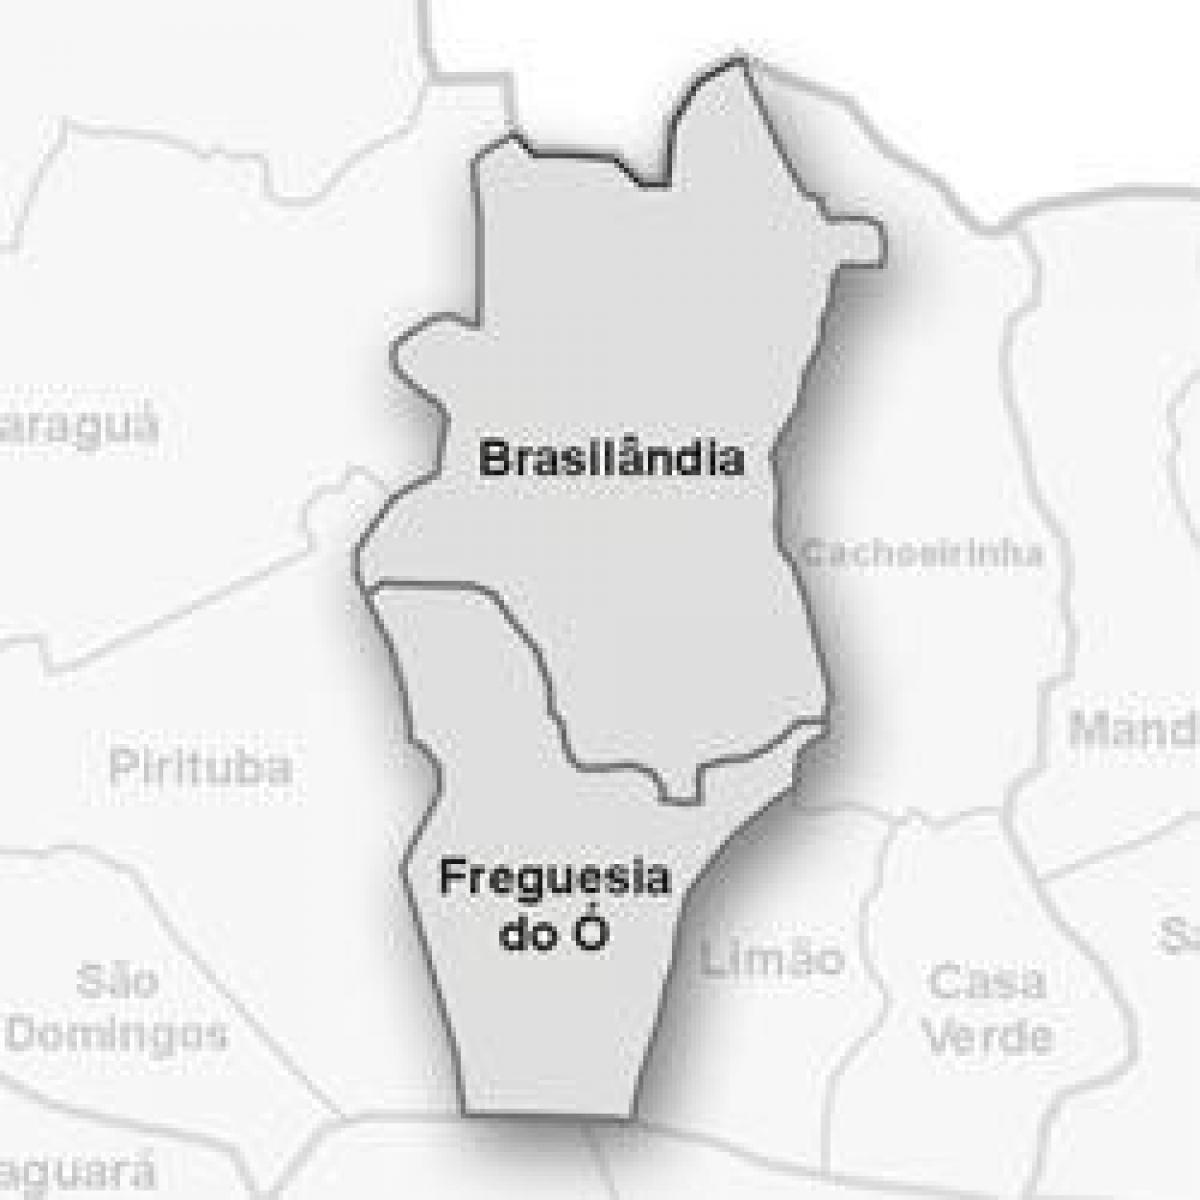 מפה של Freguesia לעשות - תת-פריפקטורה